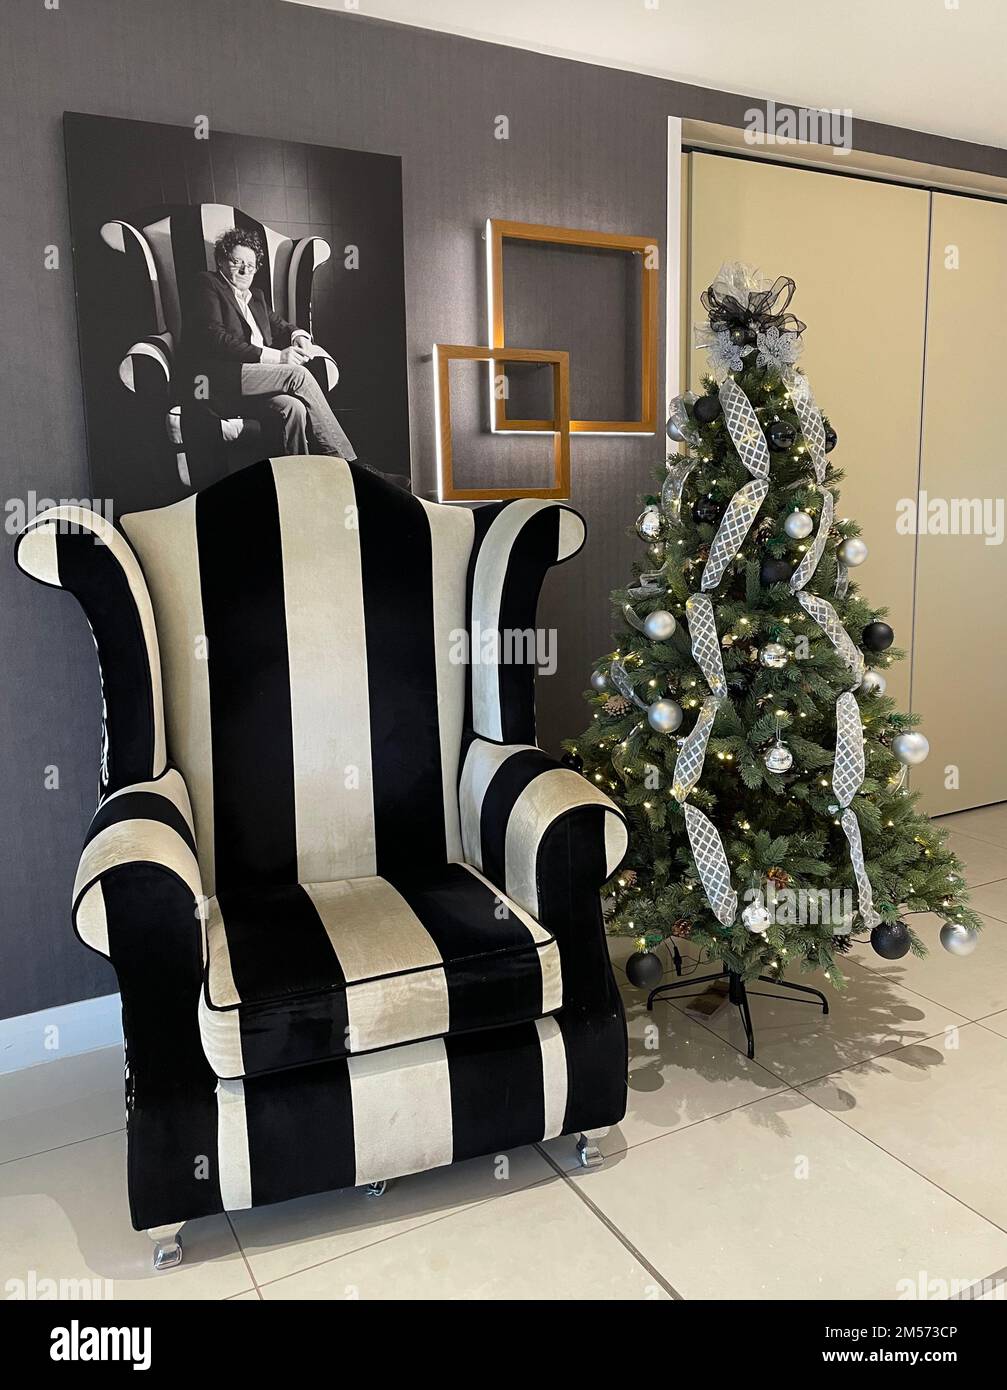 La chaise de Marco Pierre White dans son restaurant de Milton Keynes, avec un arbre de Noël. Il s'agit d'un fauteuil à dossier de M. McQueen, fabriqué par Richard James. Banque D'Images